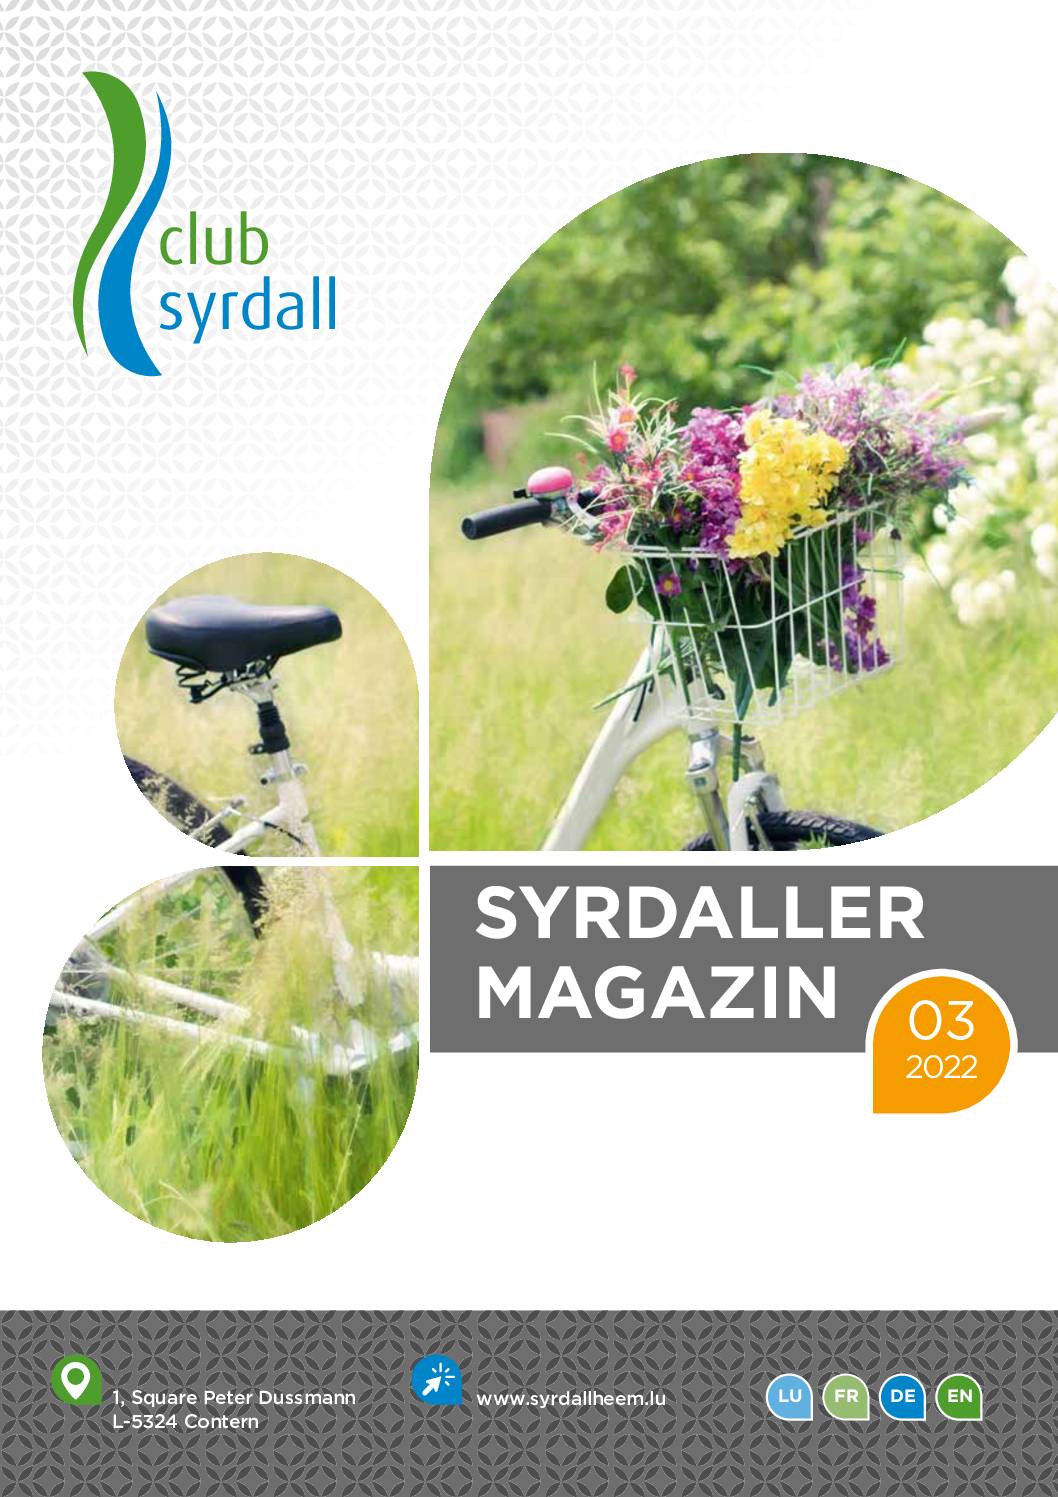 club syrdall Bro Syrdaller Magazin 032022 86589 WEB